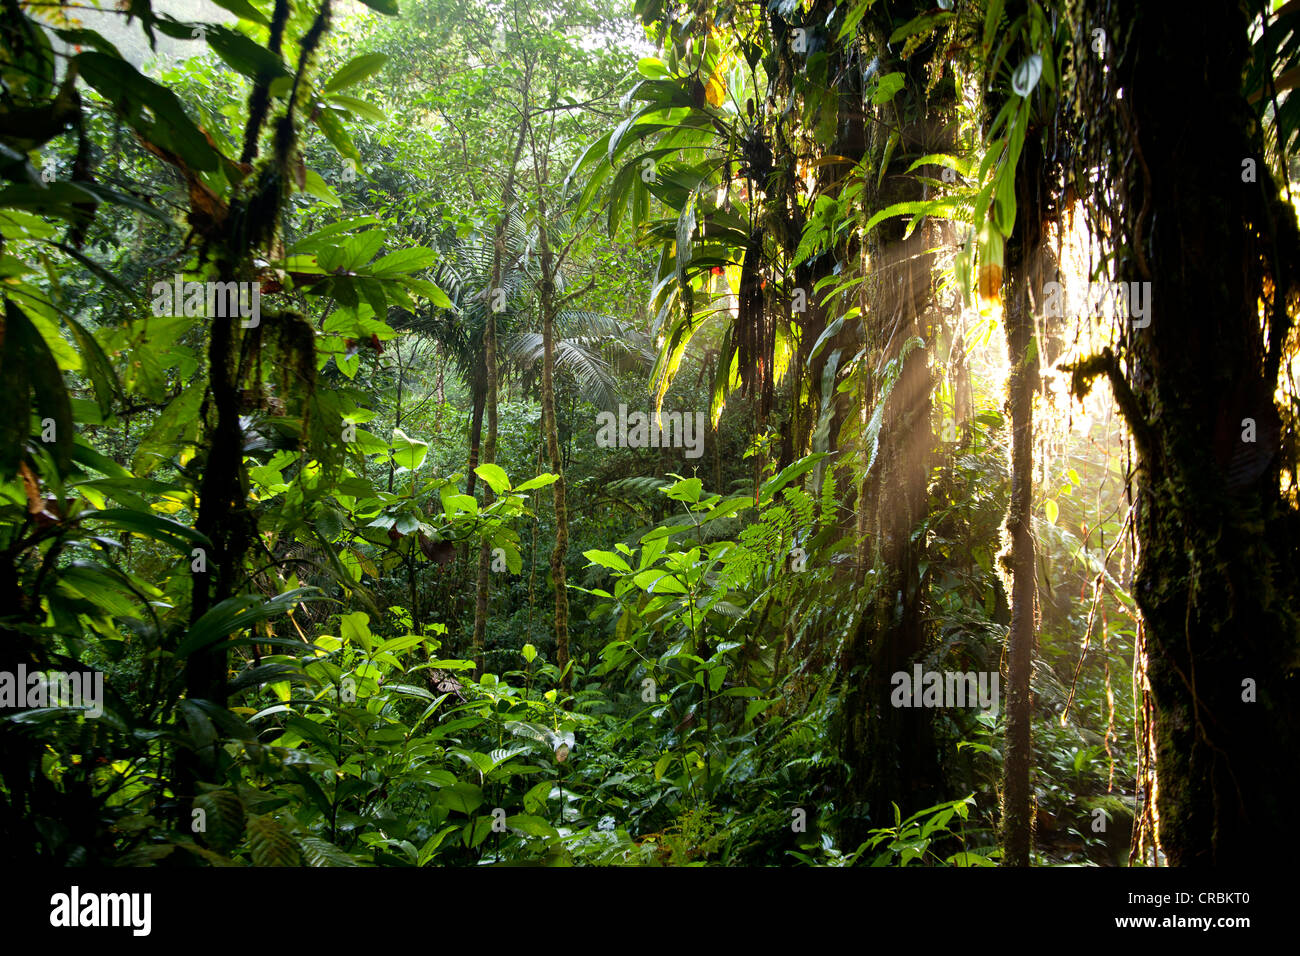 La luz del sol en la tupida selva del Parque Nacional Braulio Carrillo, Costa Rica, Centroamérica Foto de stock